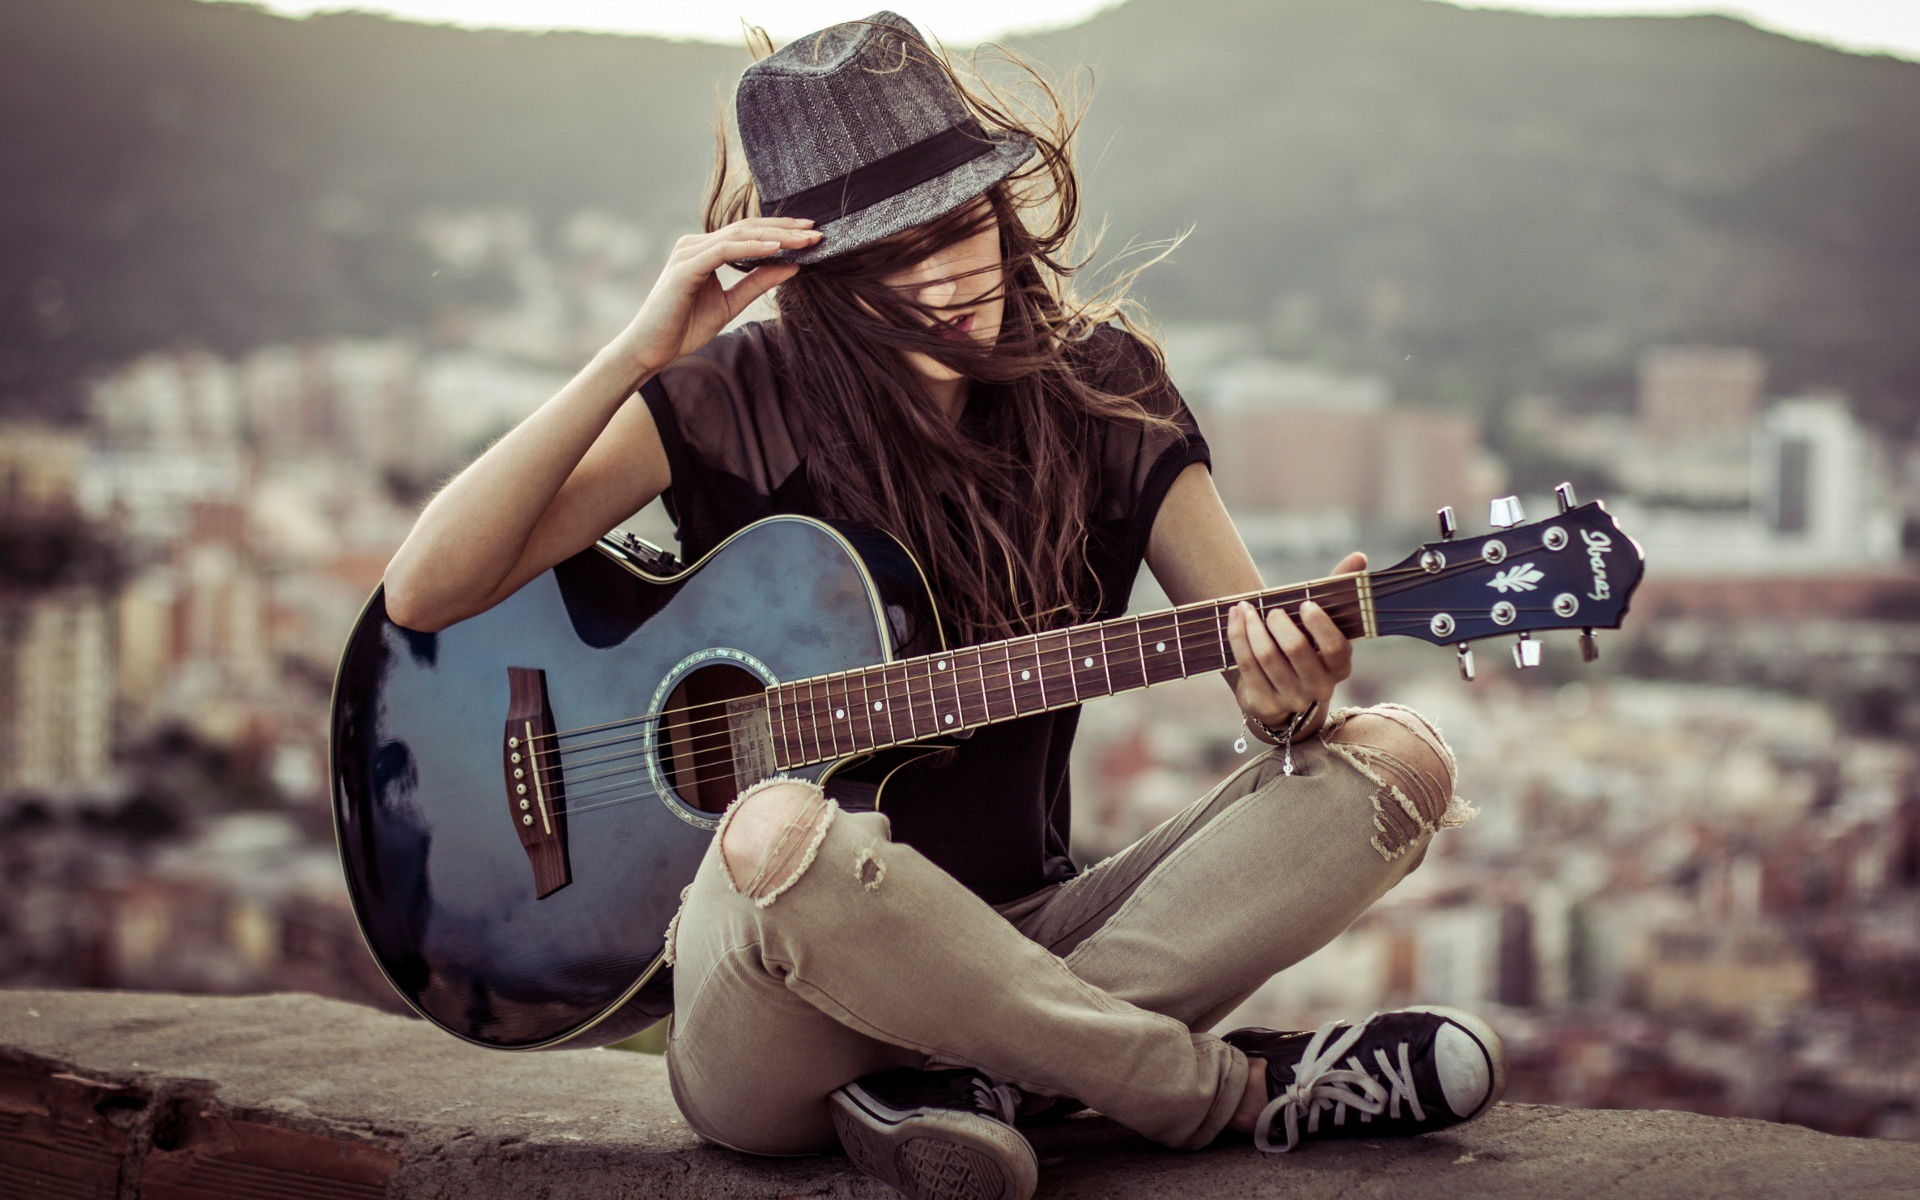 عکس دختر با گیتار زیبا